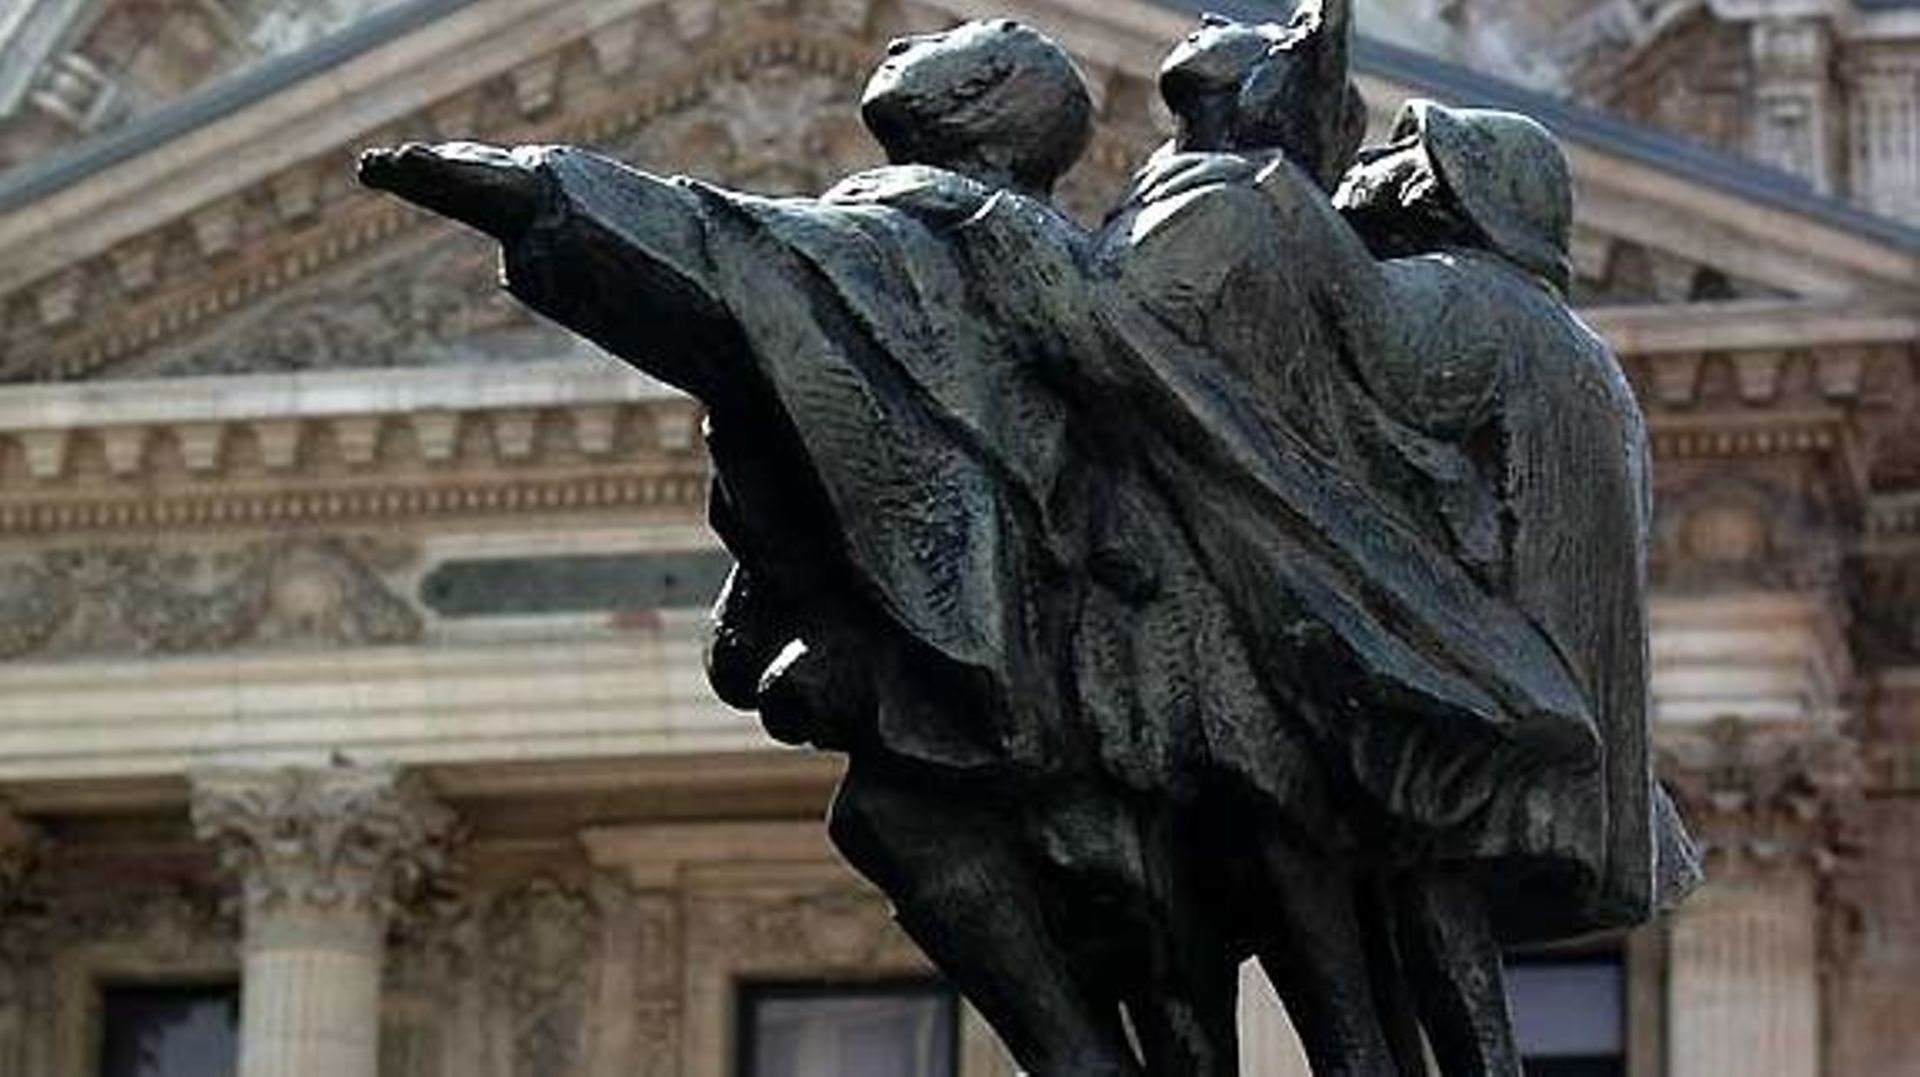 Statue des 3 aveugles- "Bruxelles en histoire et en légende" by brusselsbyfoot